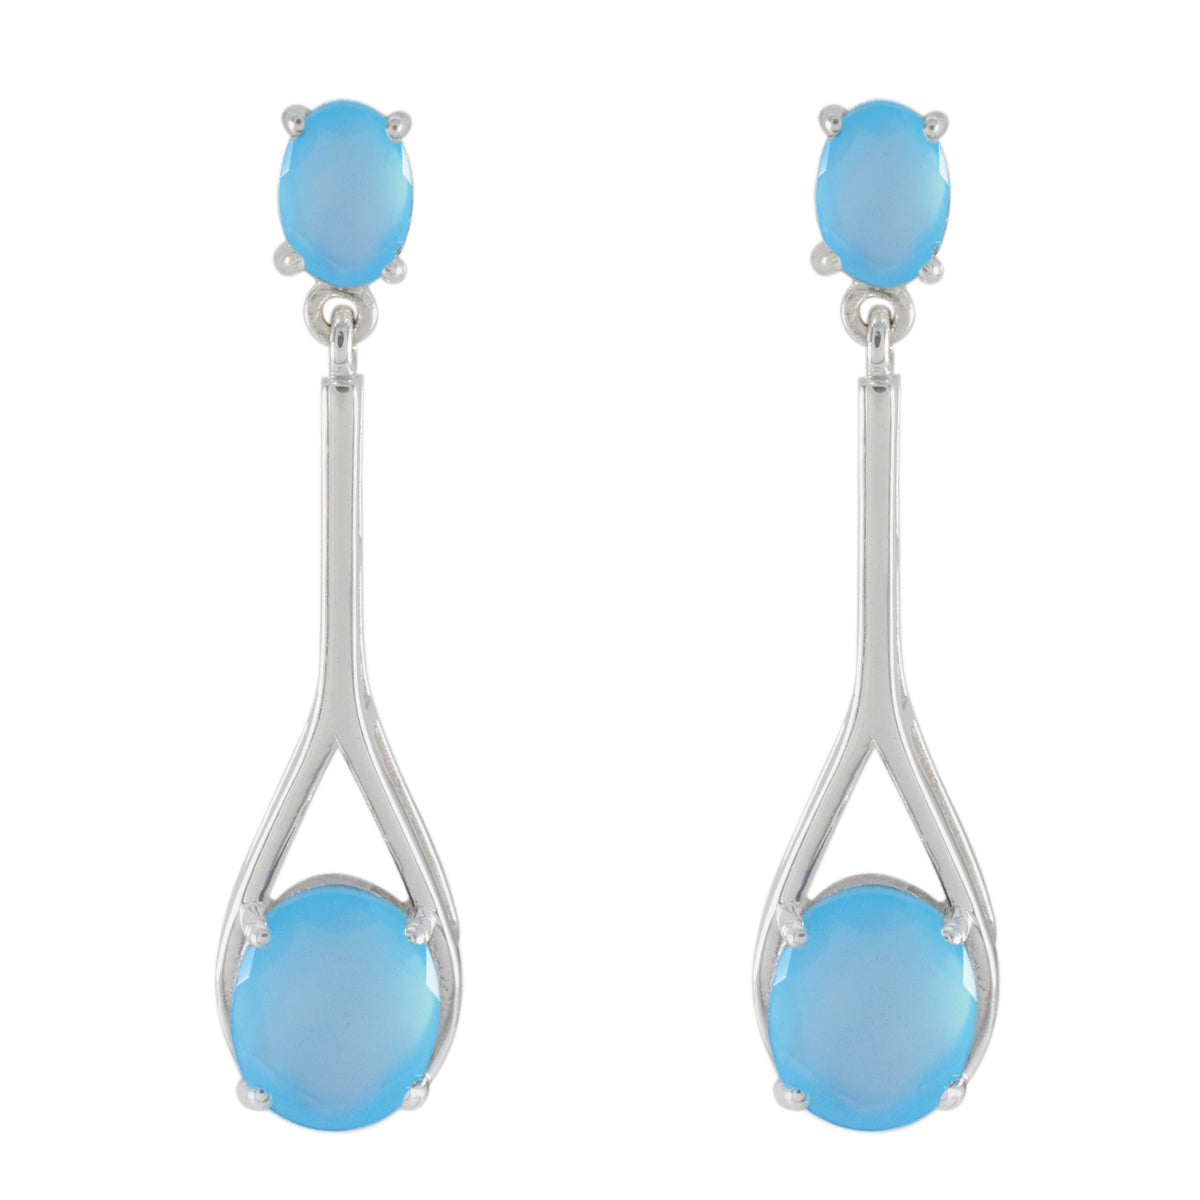 Riyo Fanciable 925 Sterling Silver Earring For Femme Blue Chalcedony Earring Bezel Setting Blue Earring Stud Earring